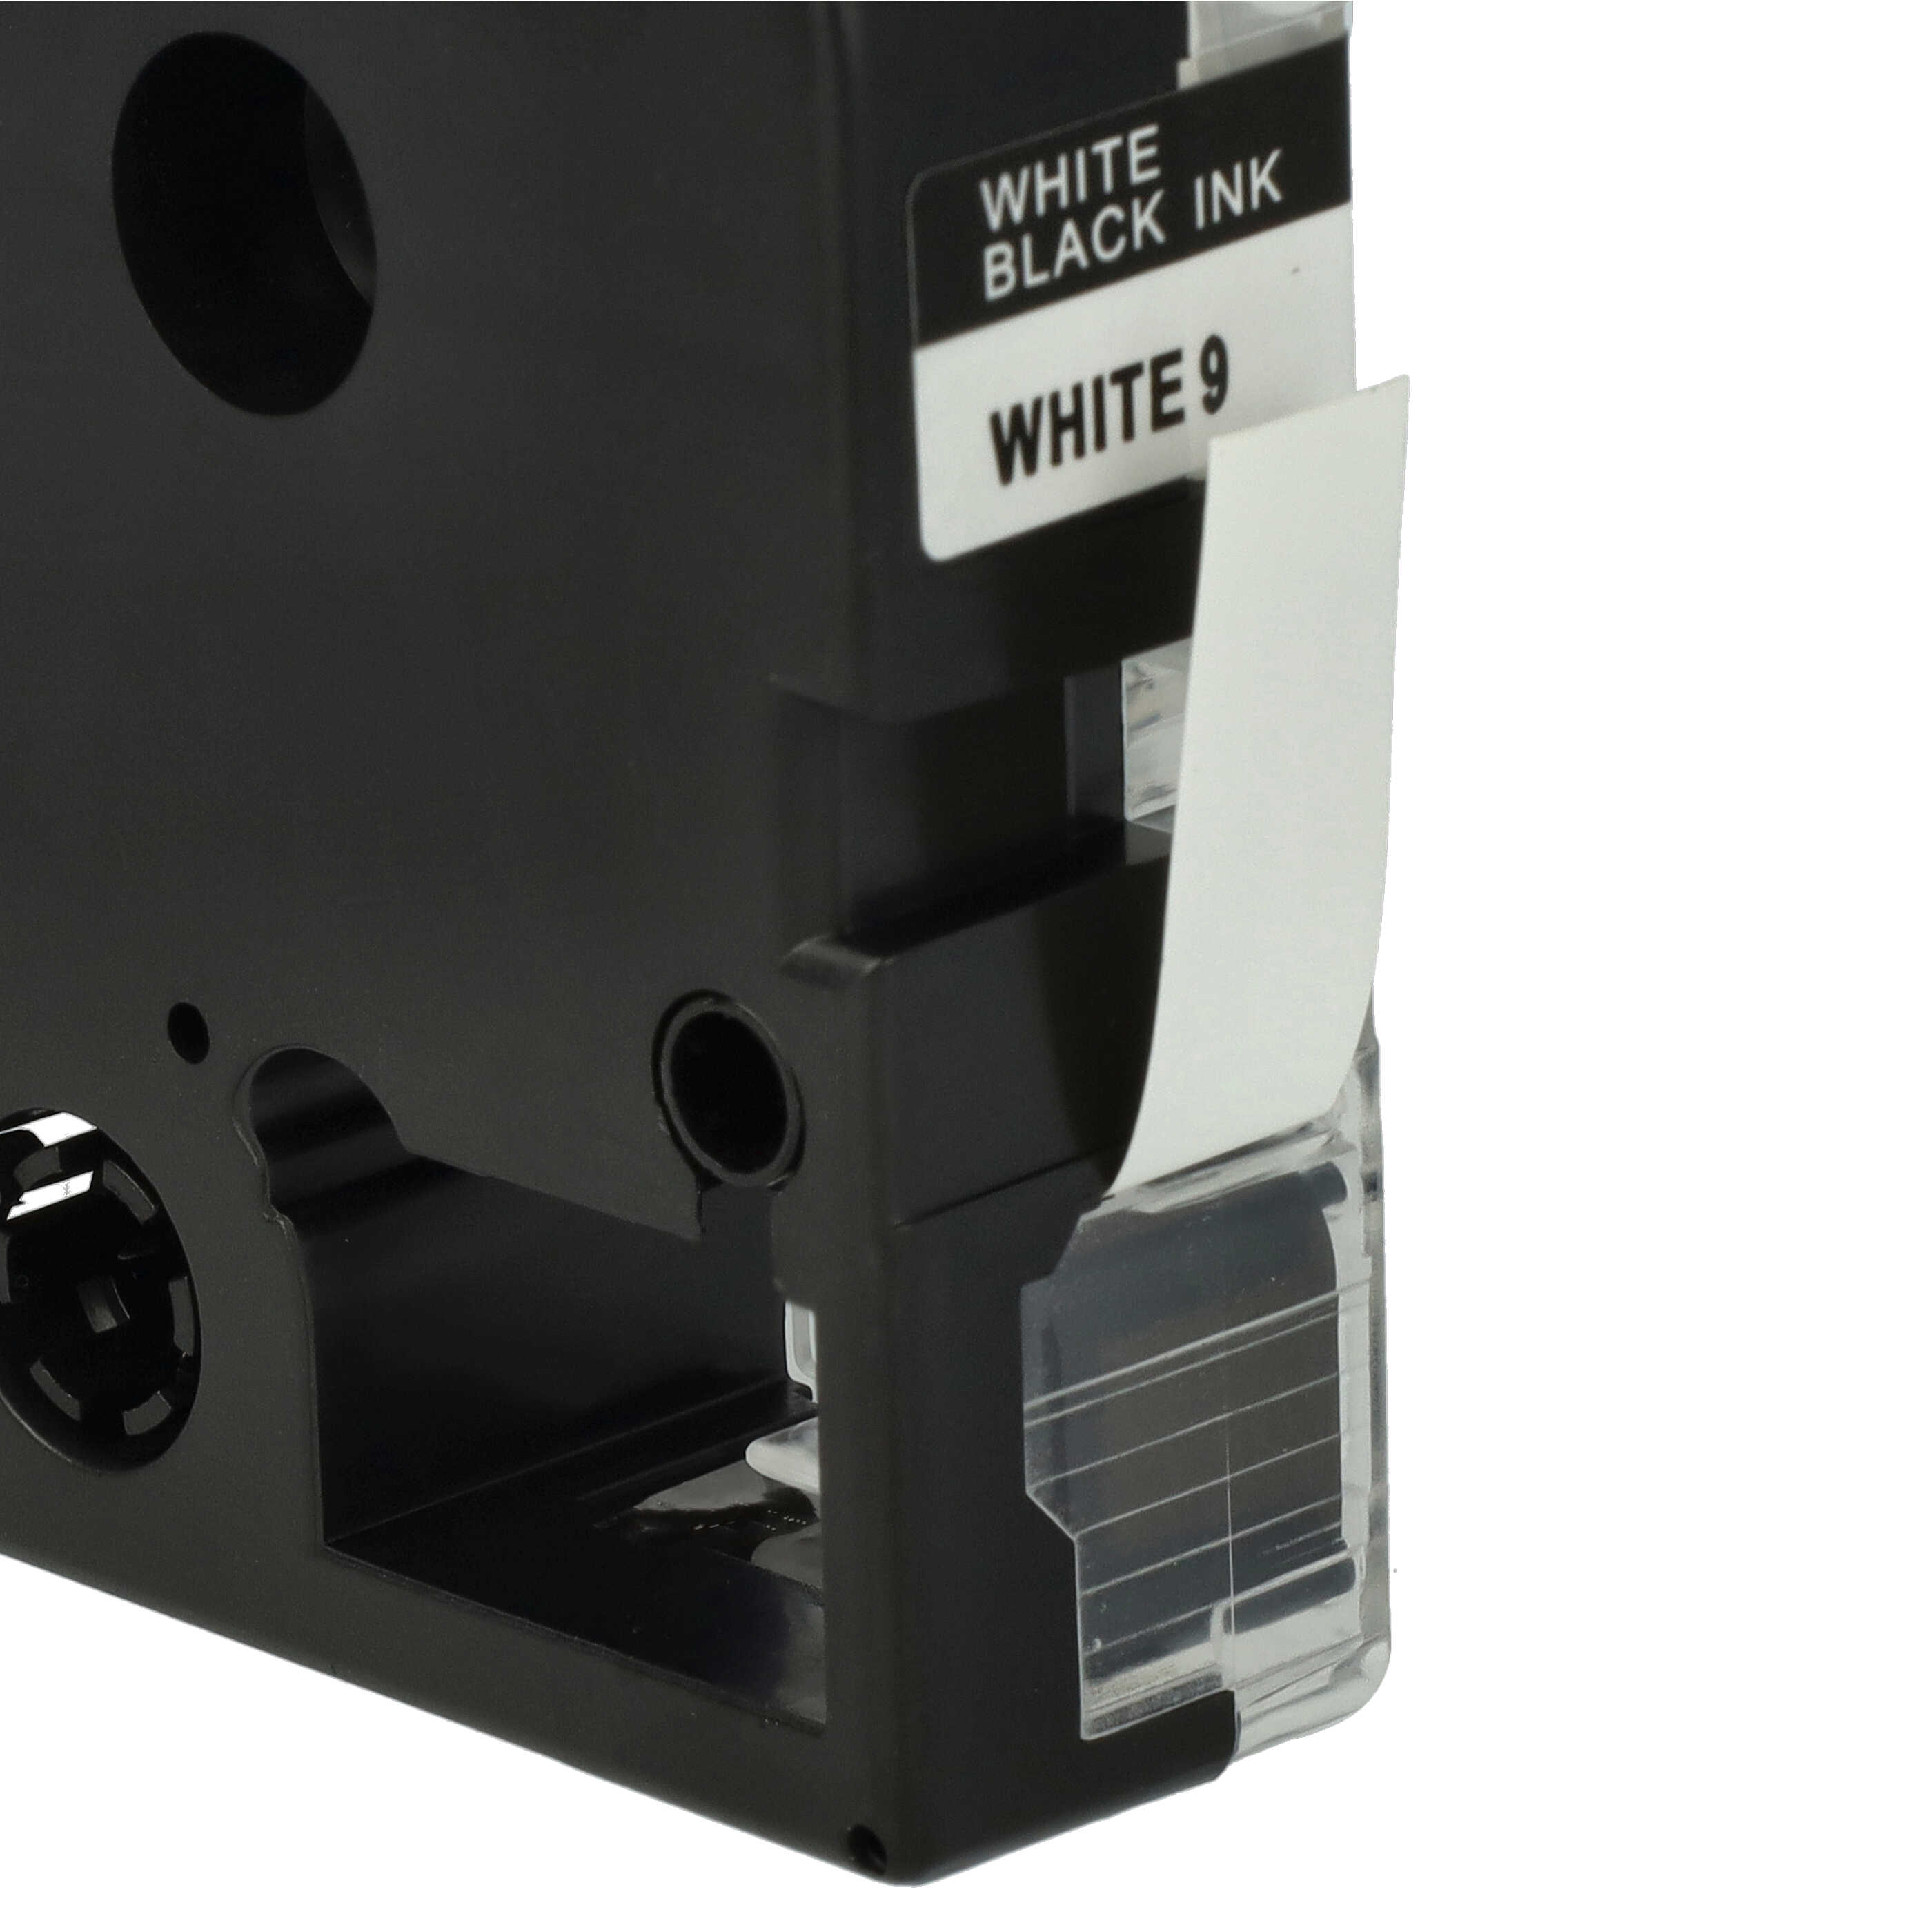 3x Schriftband als Ersatz für Epson SS9KW, LC-3WBN - 9mm Schwarz auf Weiß